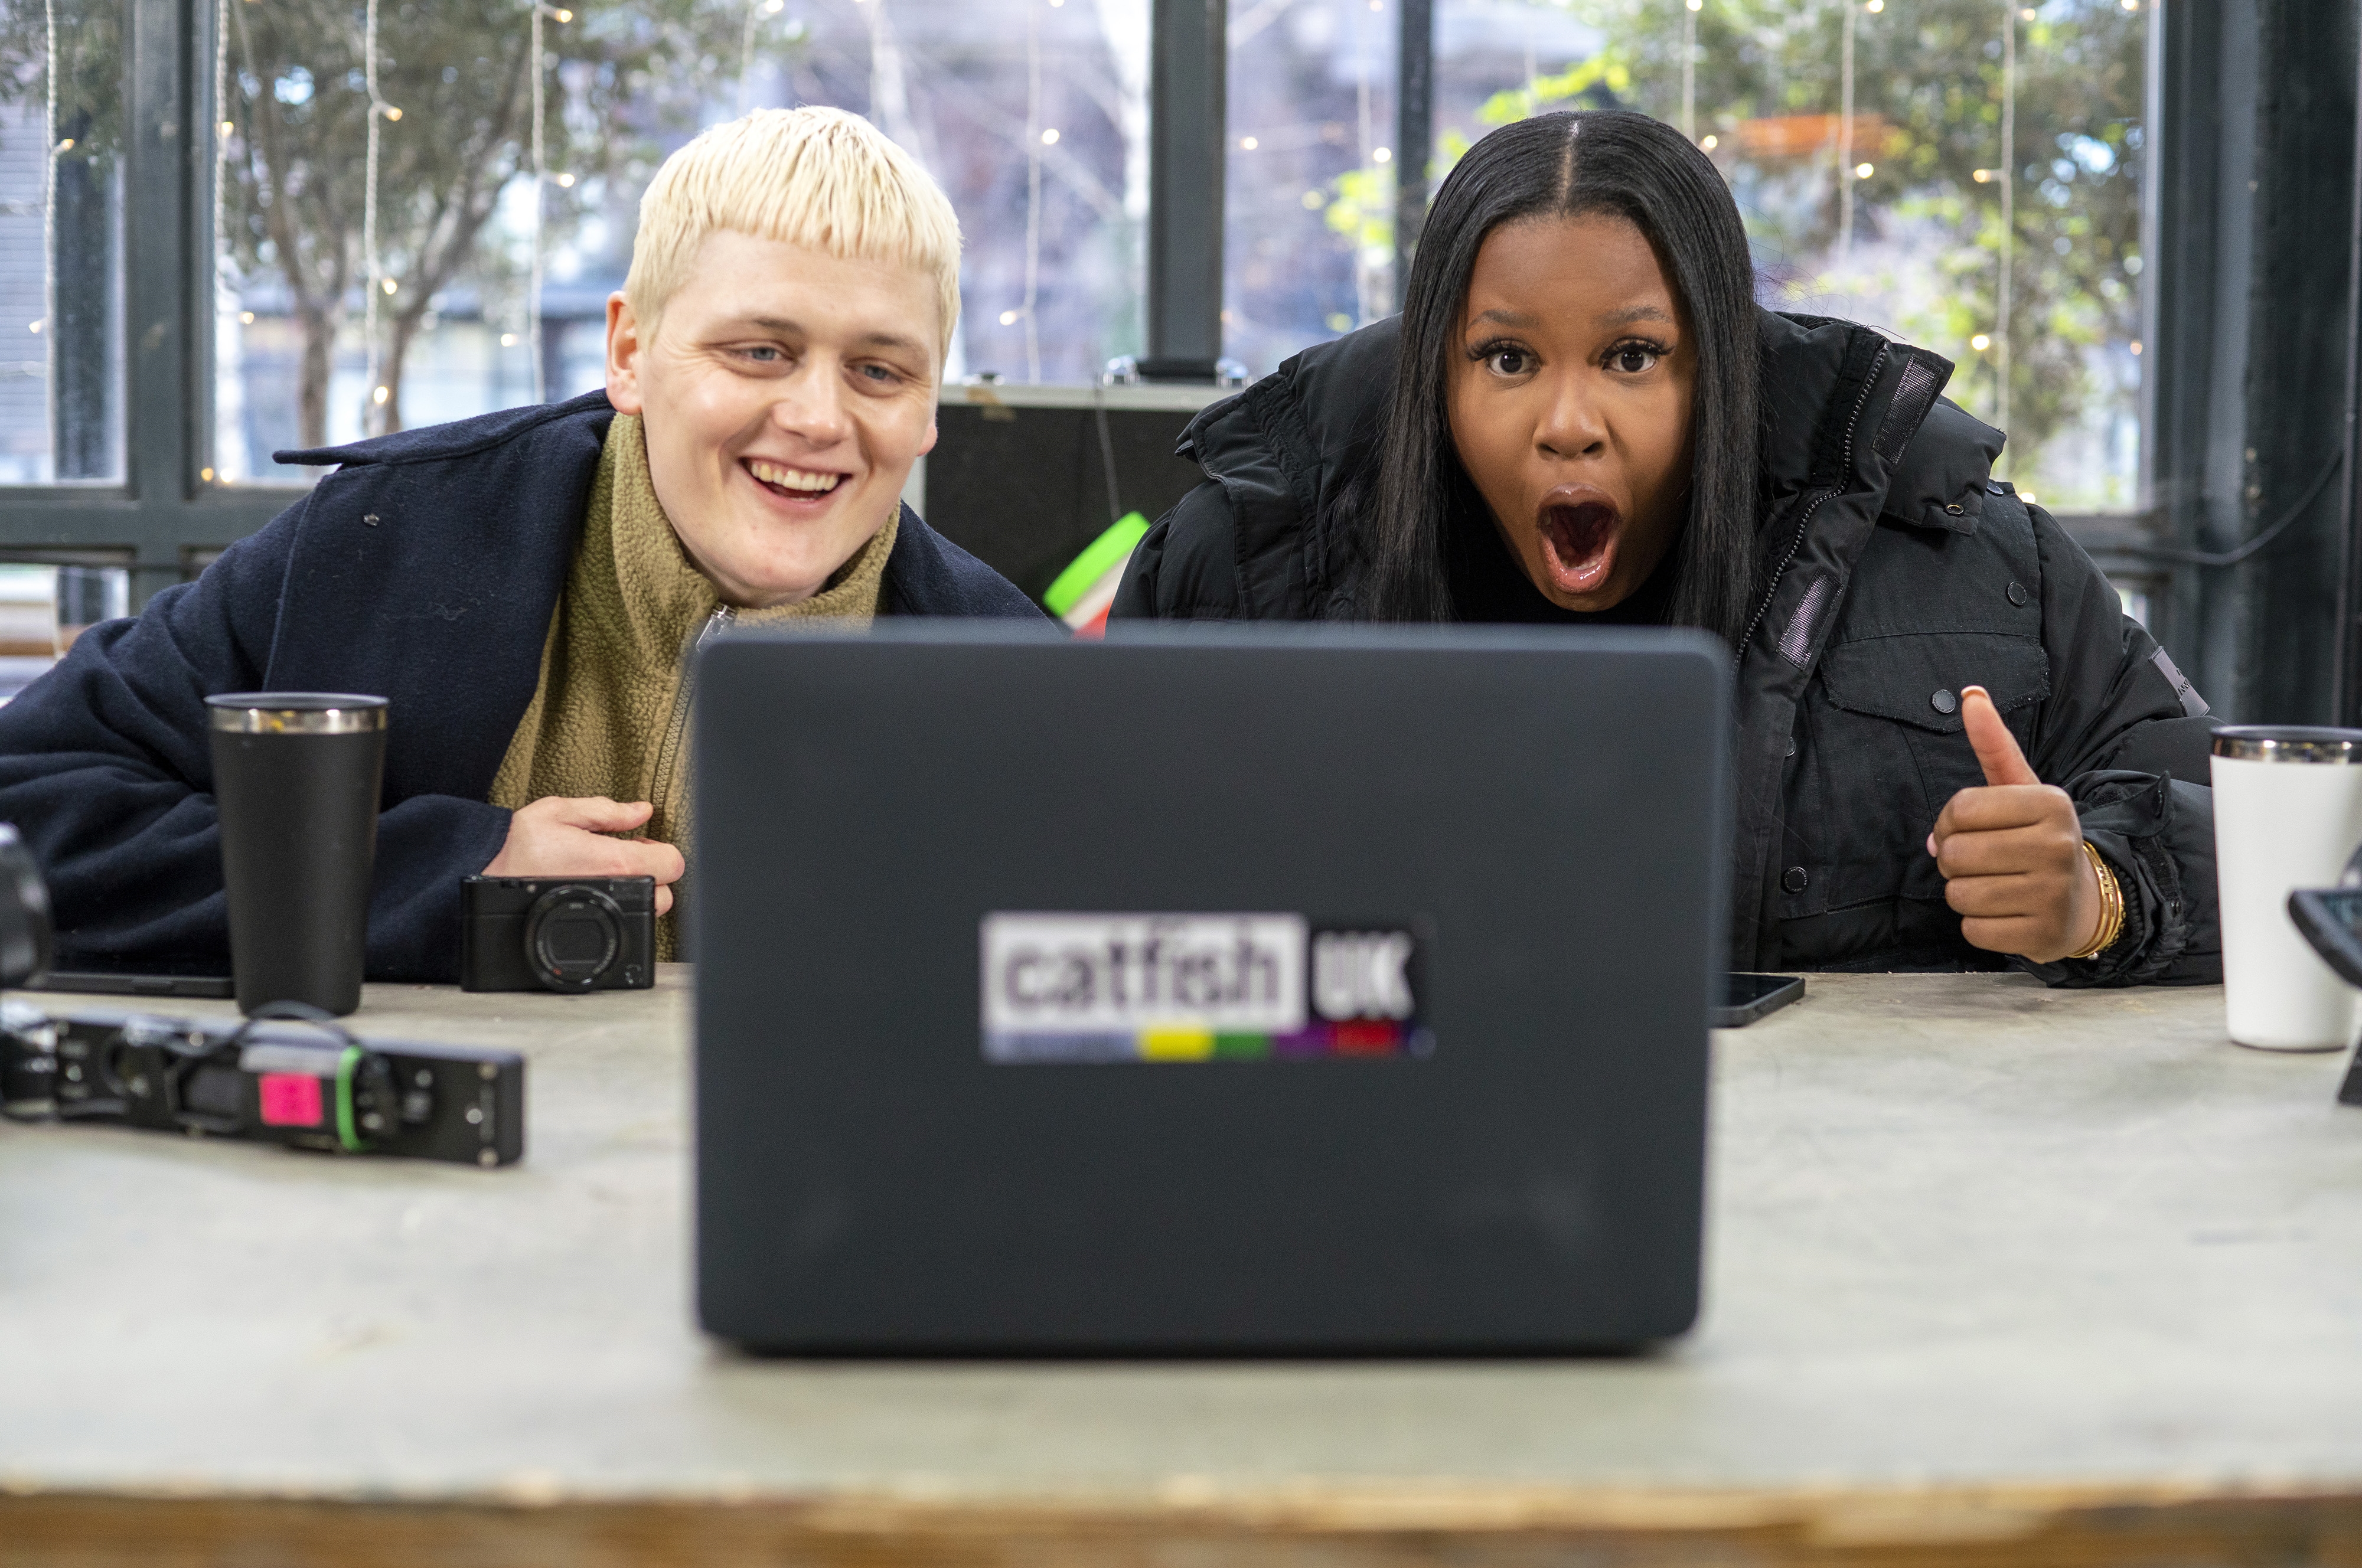 Nella war außerdem Gastgeberin der MTV-Sendung Catfish UK